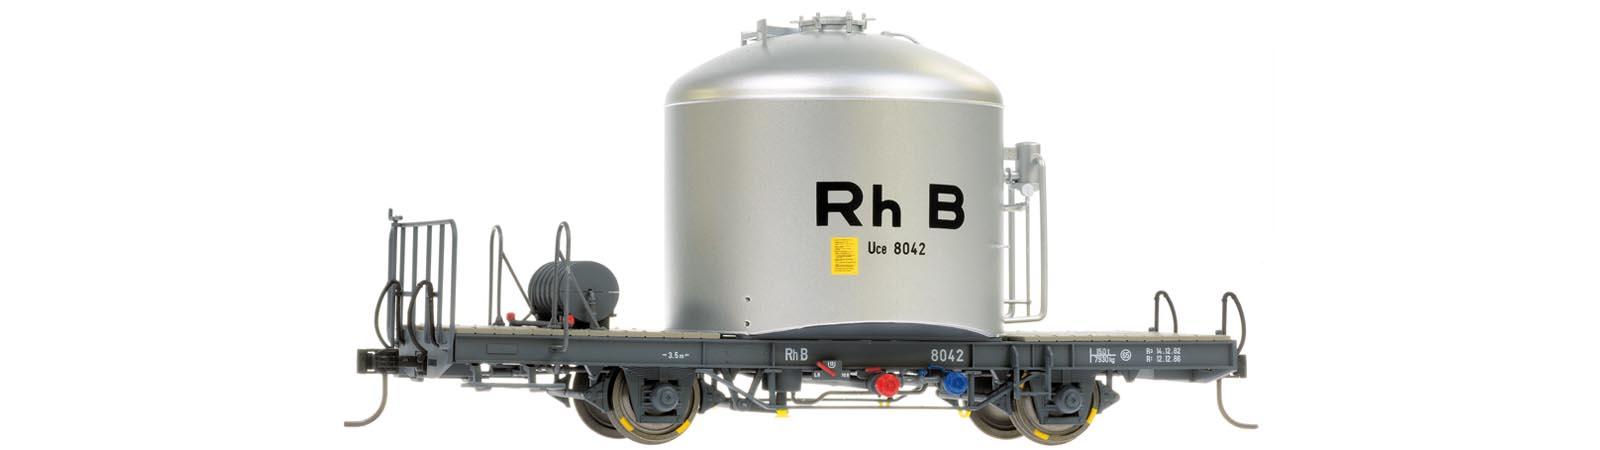 0m RhB Uce8042 ZementsiloWg silber, mit schwarzer "RhB"-Aufschrift, farbige Auslaufrohre im Sprengwerk